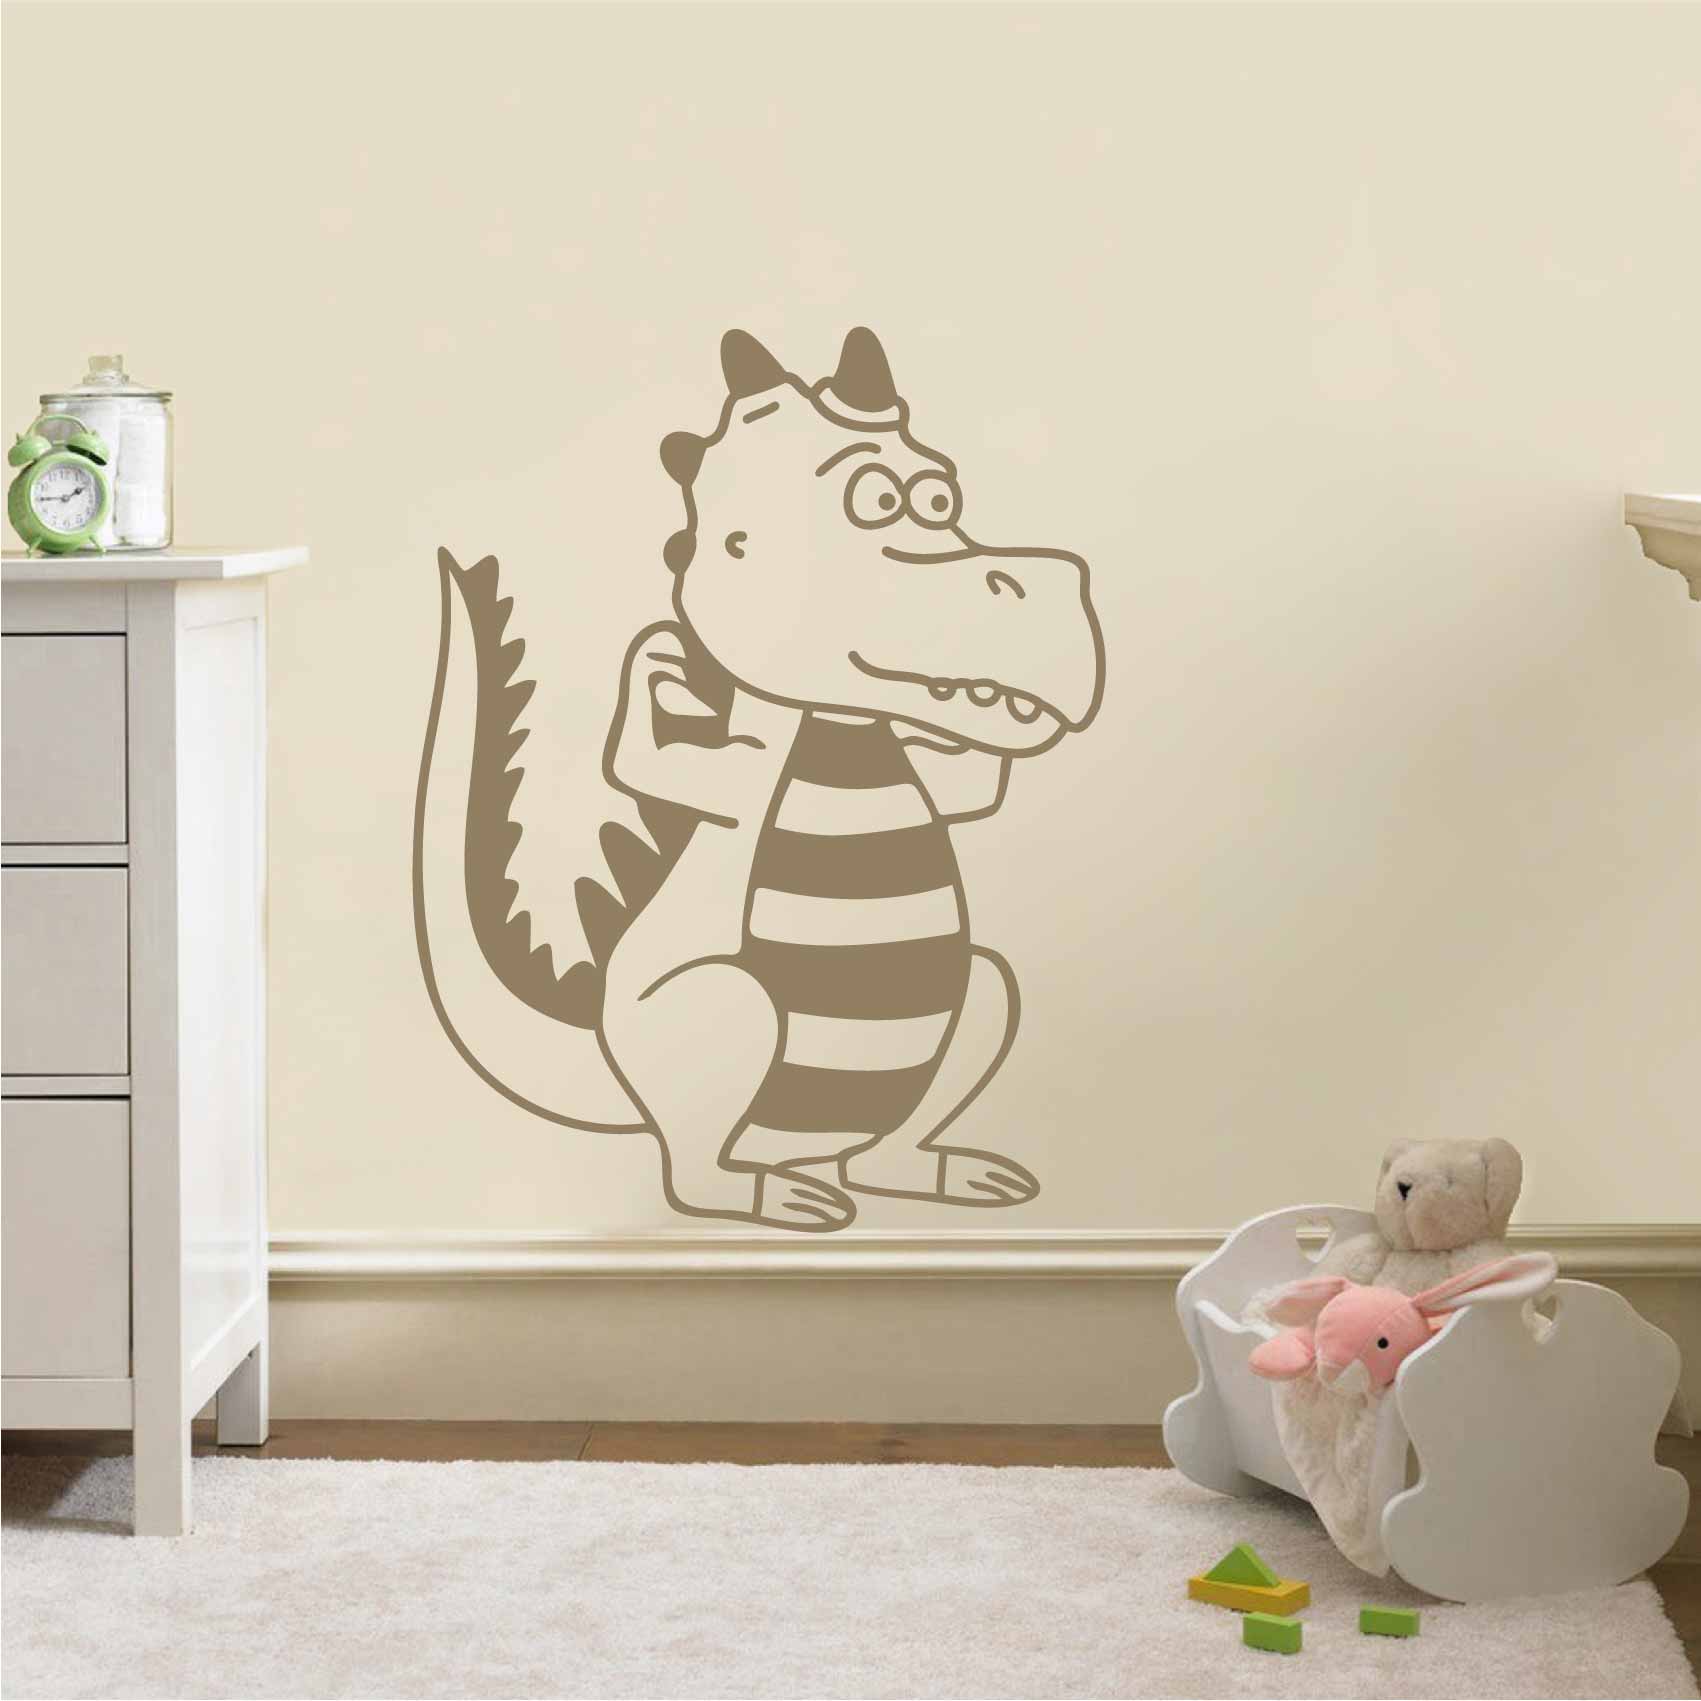 stickers-dinosaure-enfant-ref15dinosaure-autocollant-muraux-chambre-enfant-t-rex-sticker-mural-geant-dinosaures-deco-garçon-fille